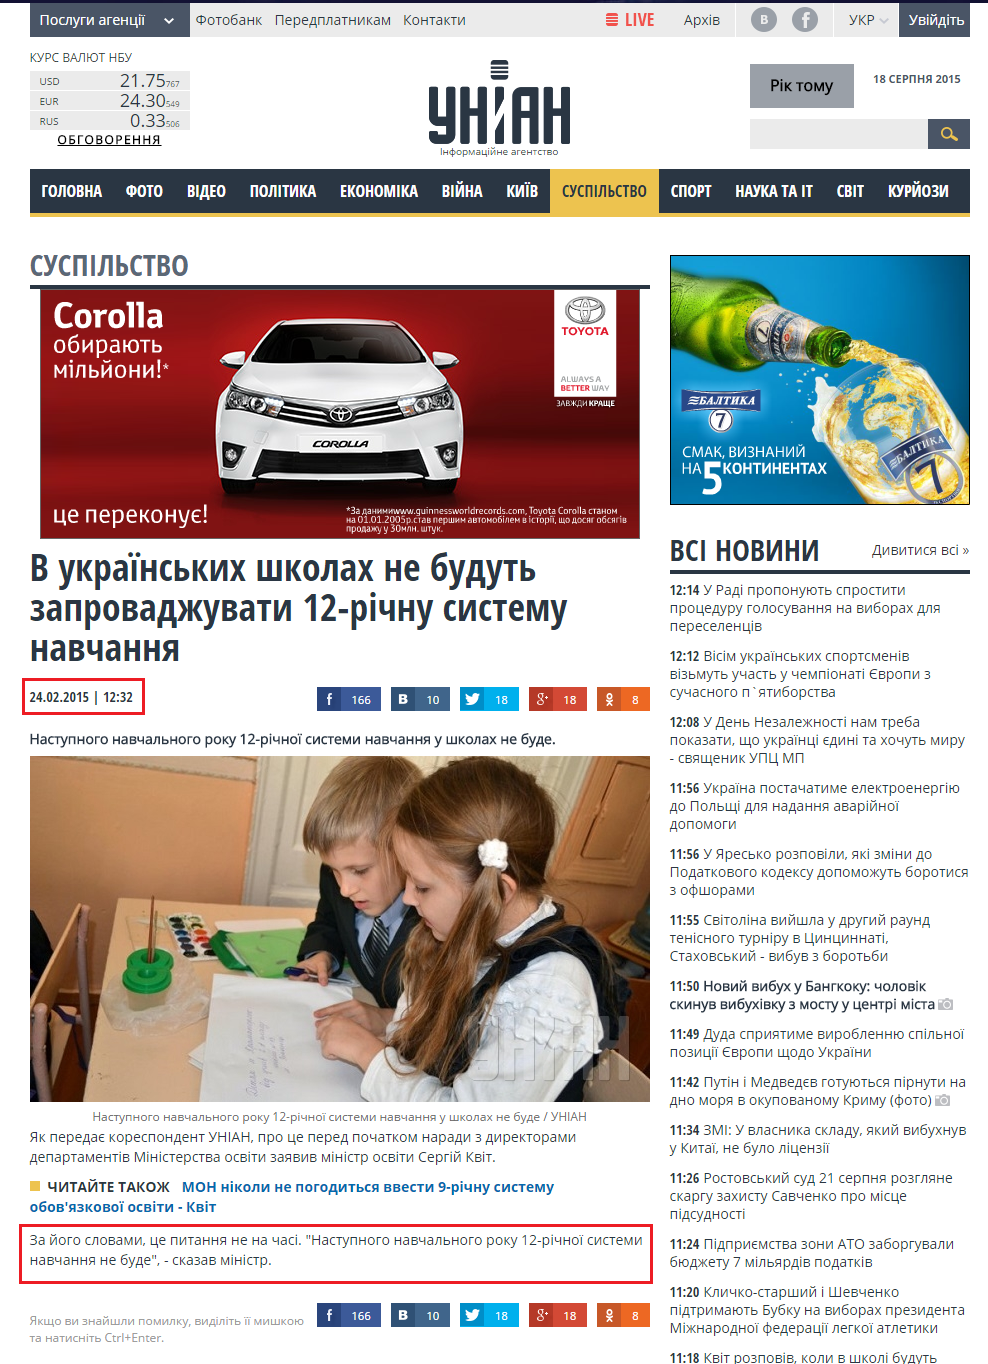 http://www.unian.ua/society/1047814-v-ukrajinskih-shkolah-skasuyut-12-richnu-sistemu-navchannya.html